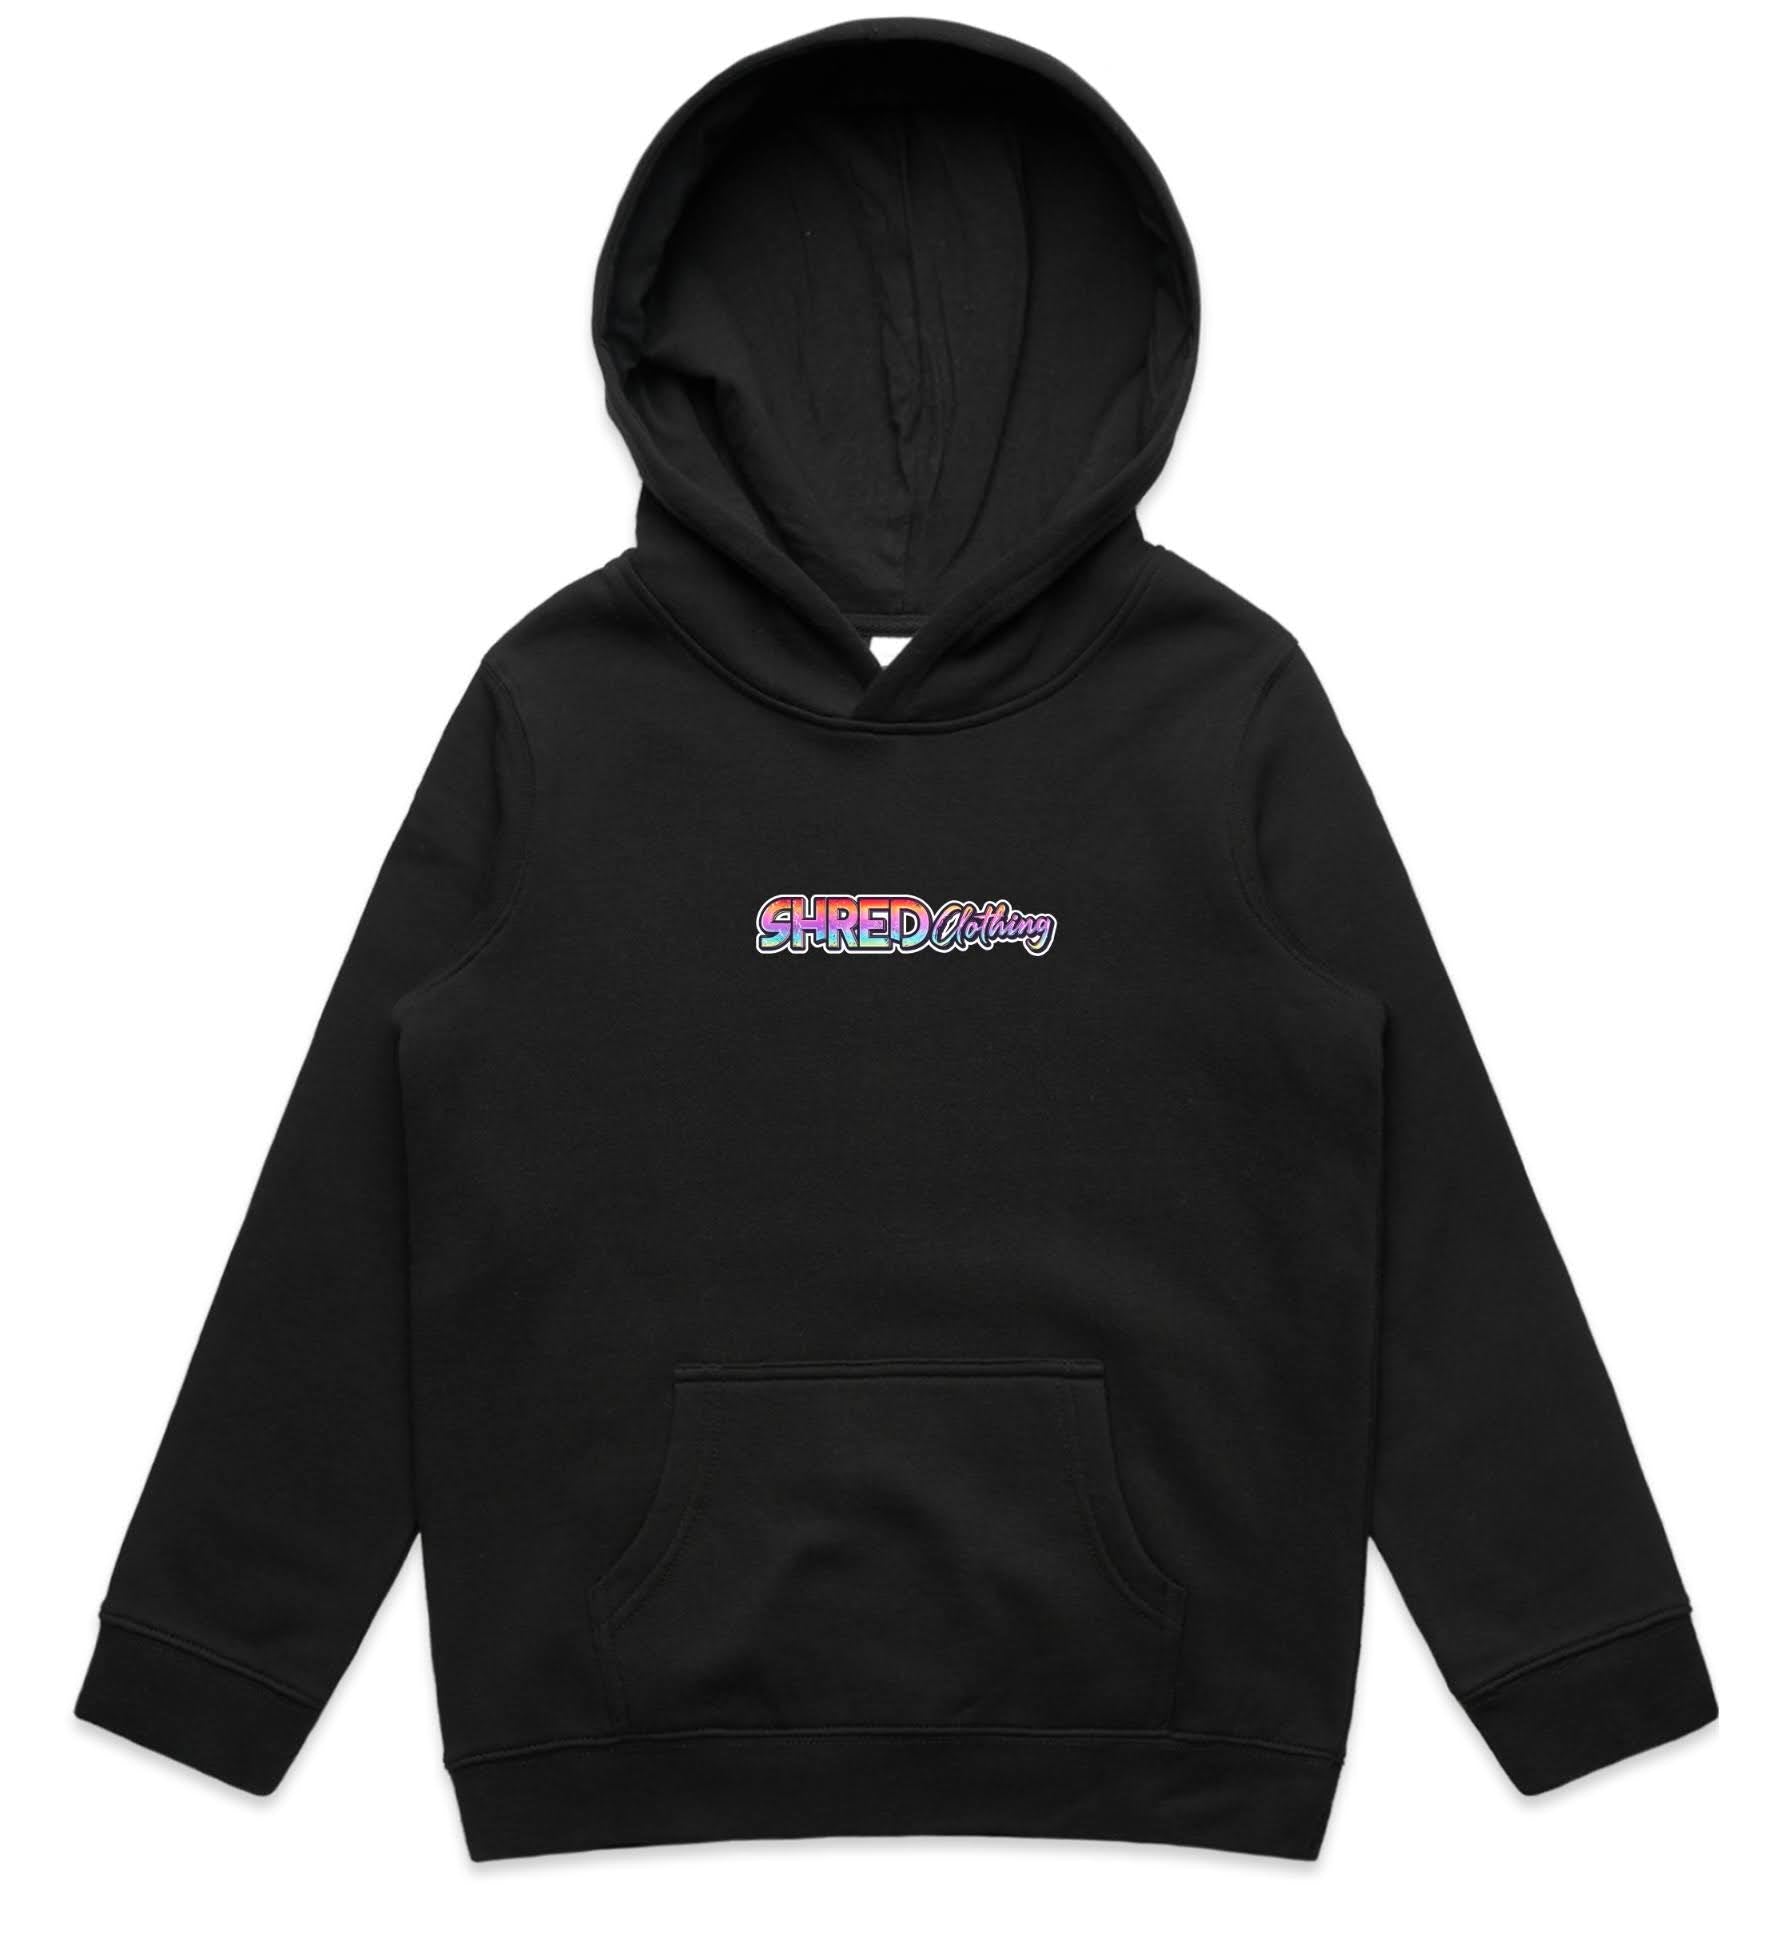 Shred hoodie